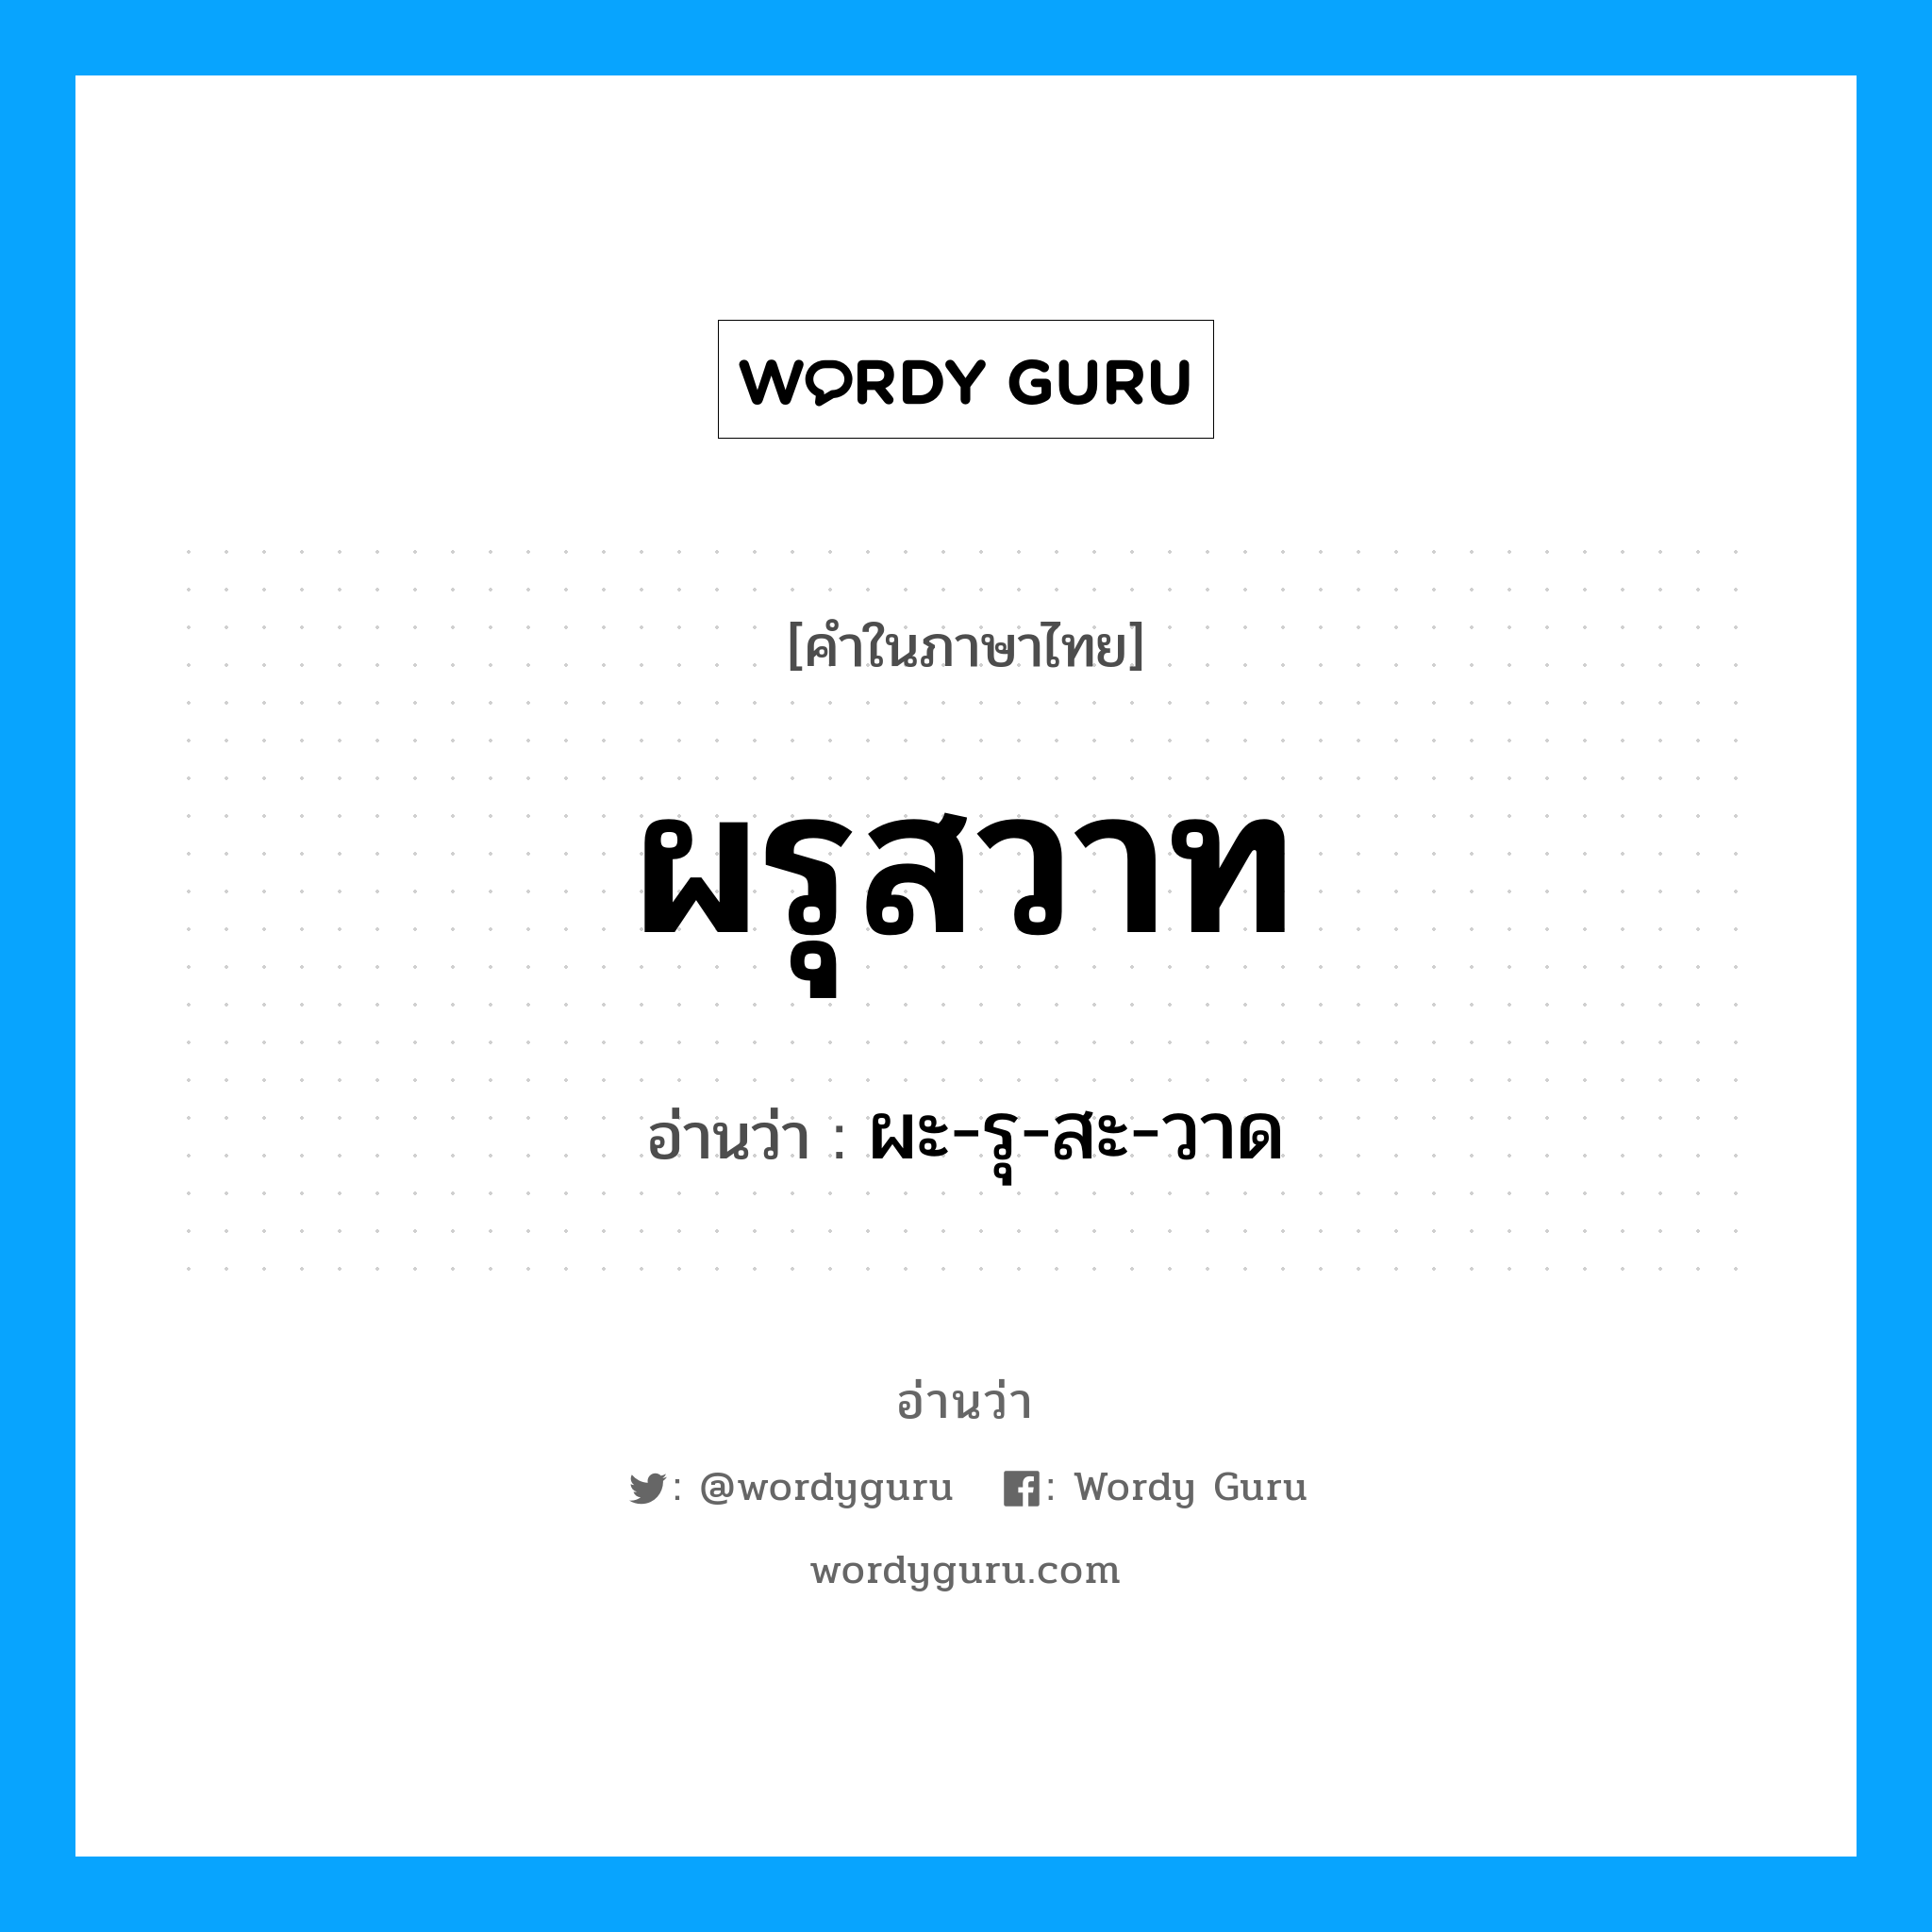 ผะ-รุ-สะ-วาด เป็นคำอ่านของคำไหน?, คำในภาษาไทย ผะ-รุ-สะ-วาด อ่านว่า ผรุสวาท